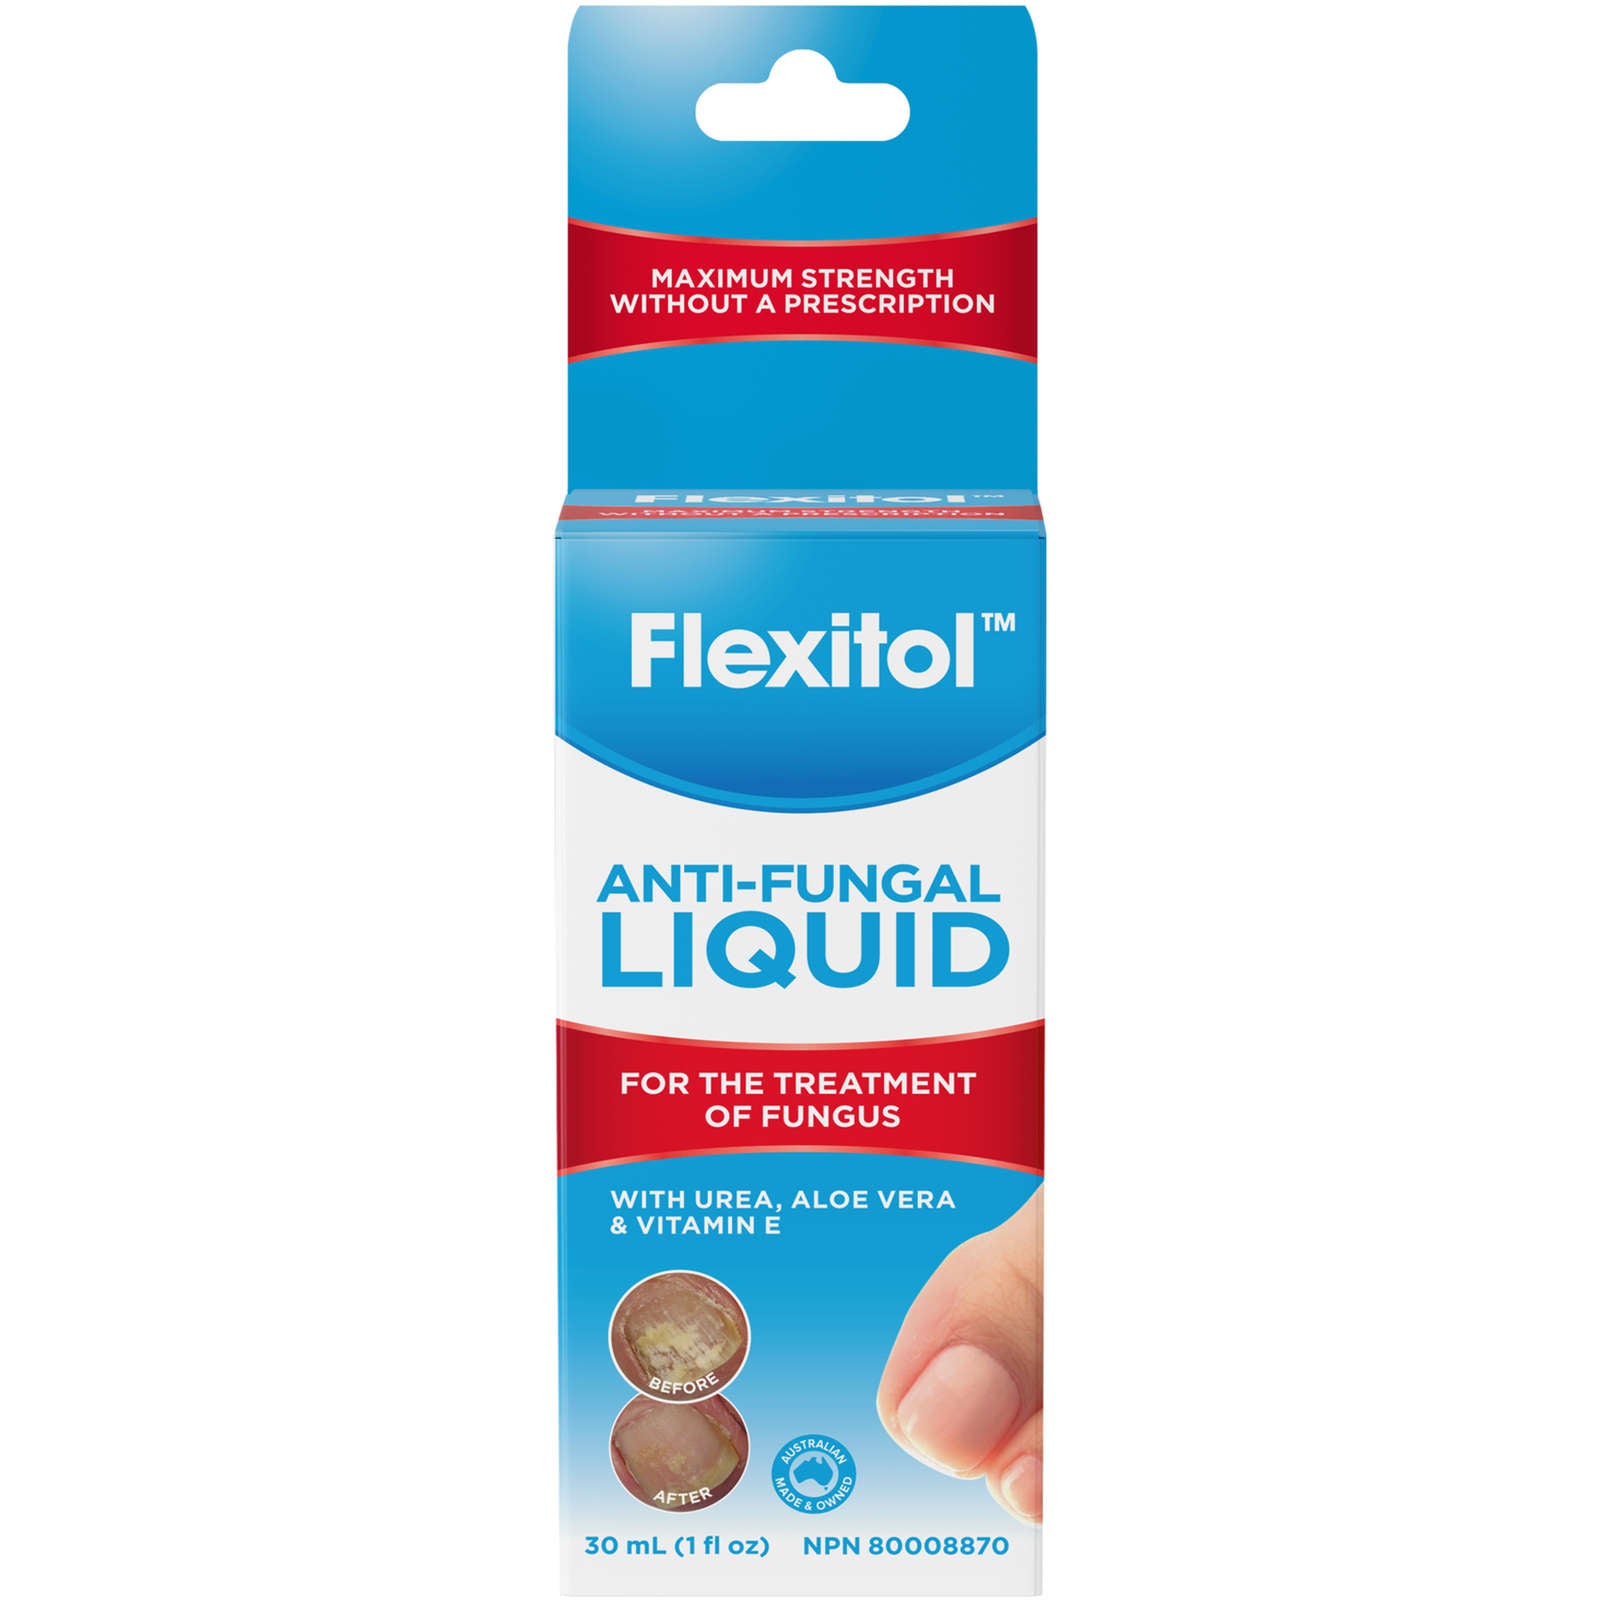 Anti-Fungal Liquid